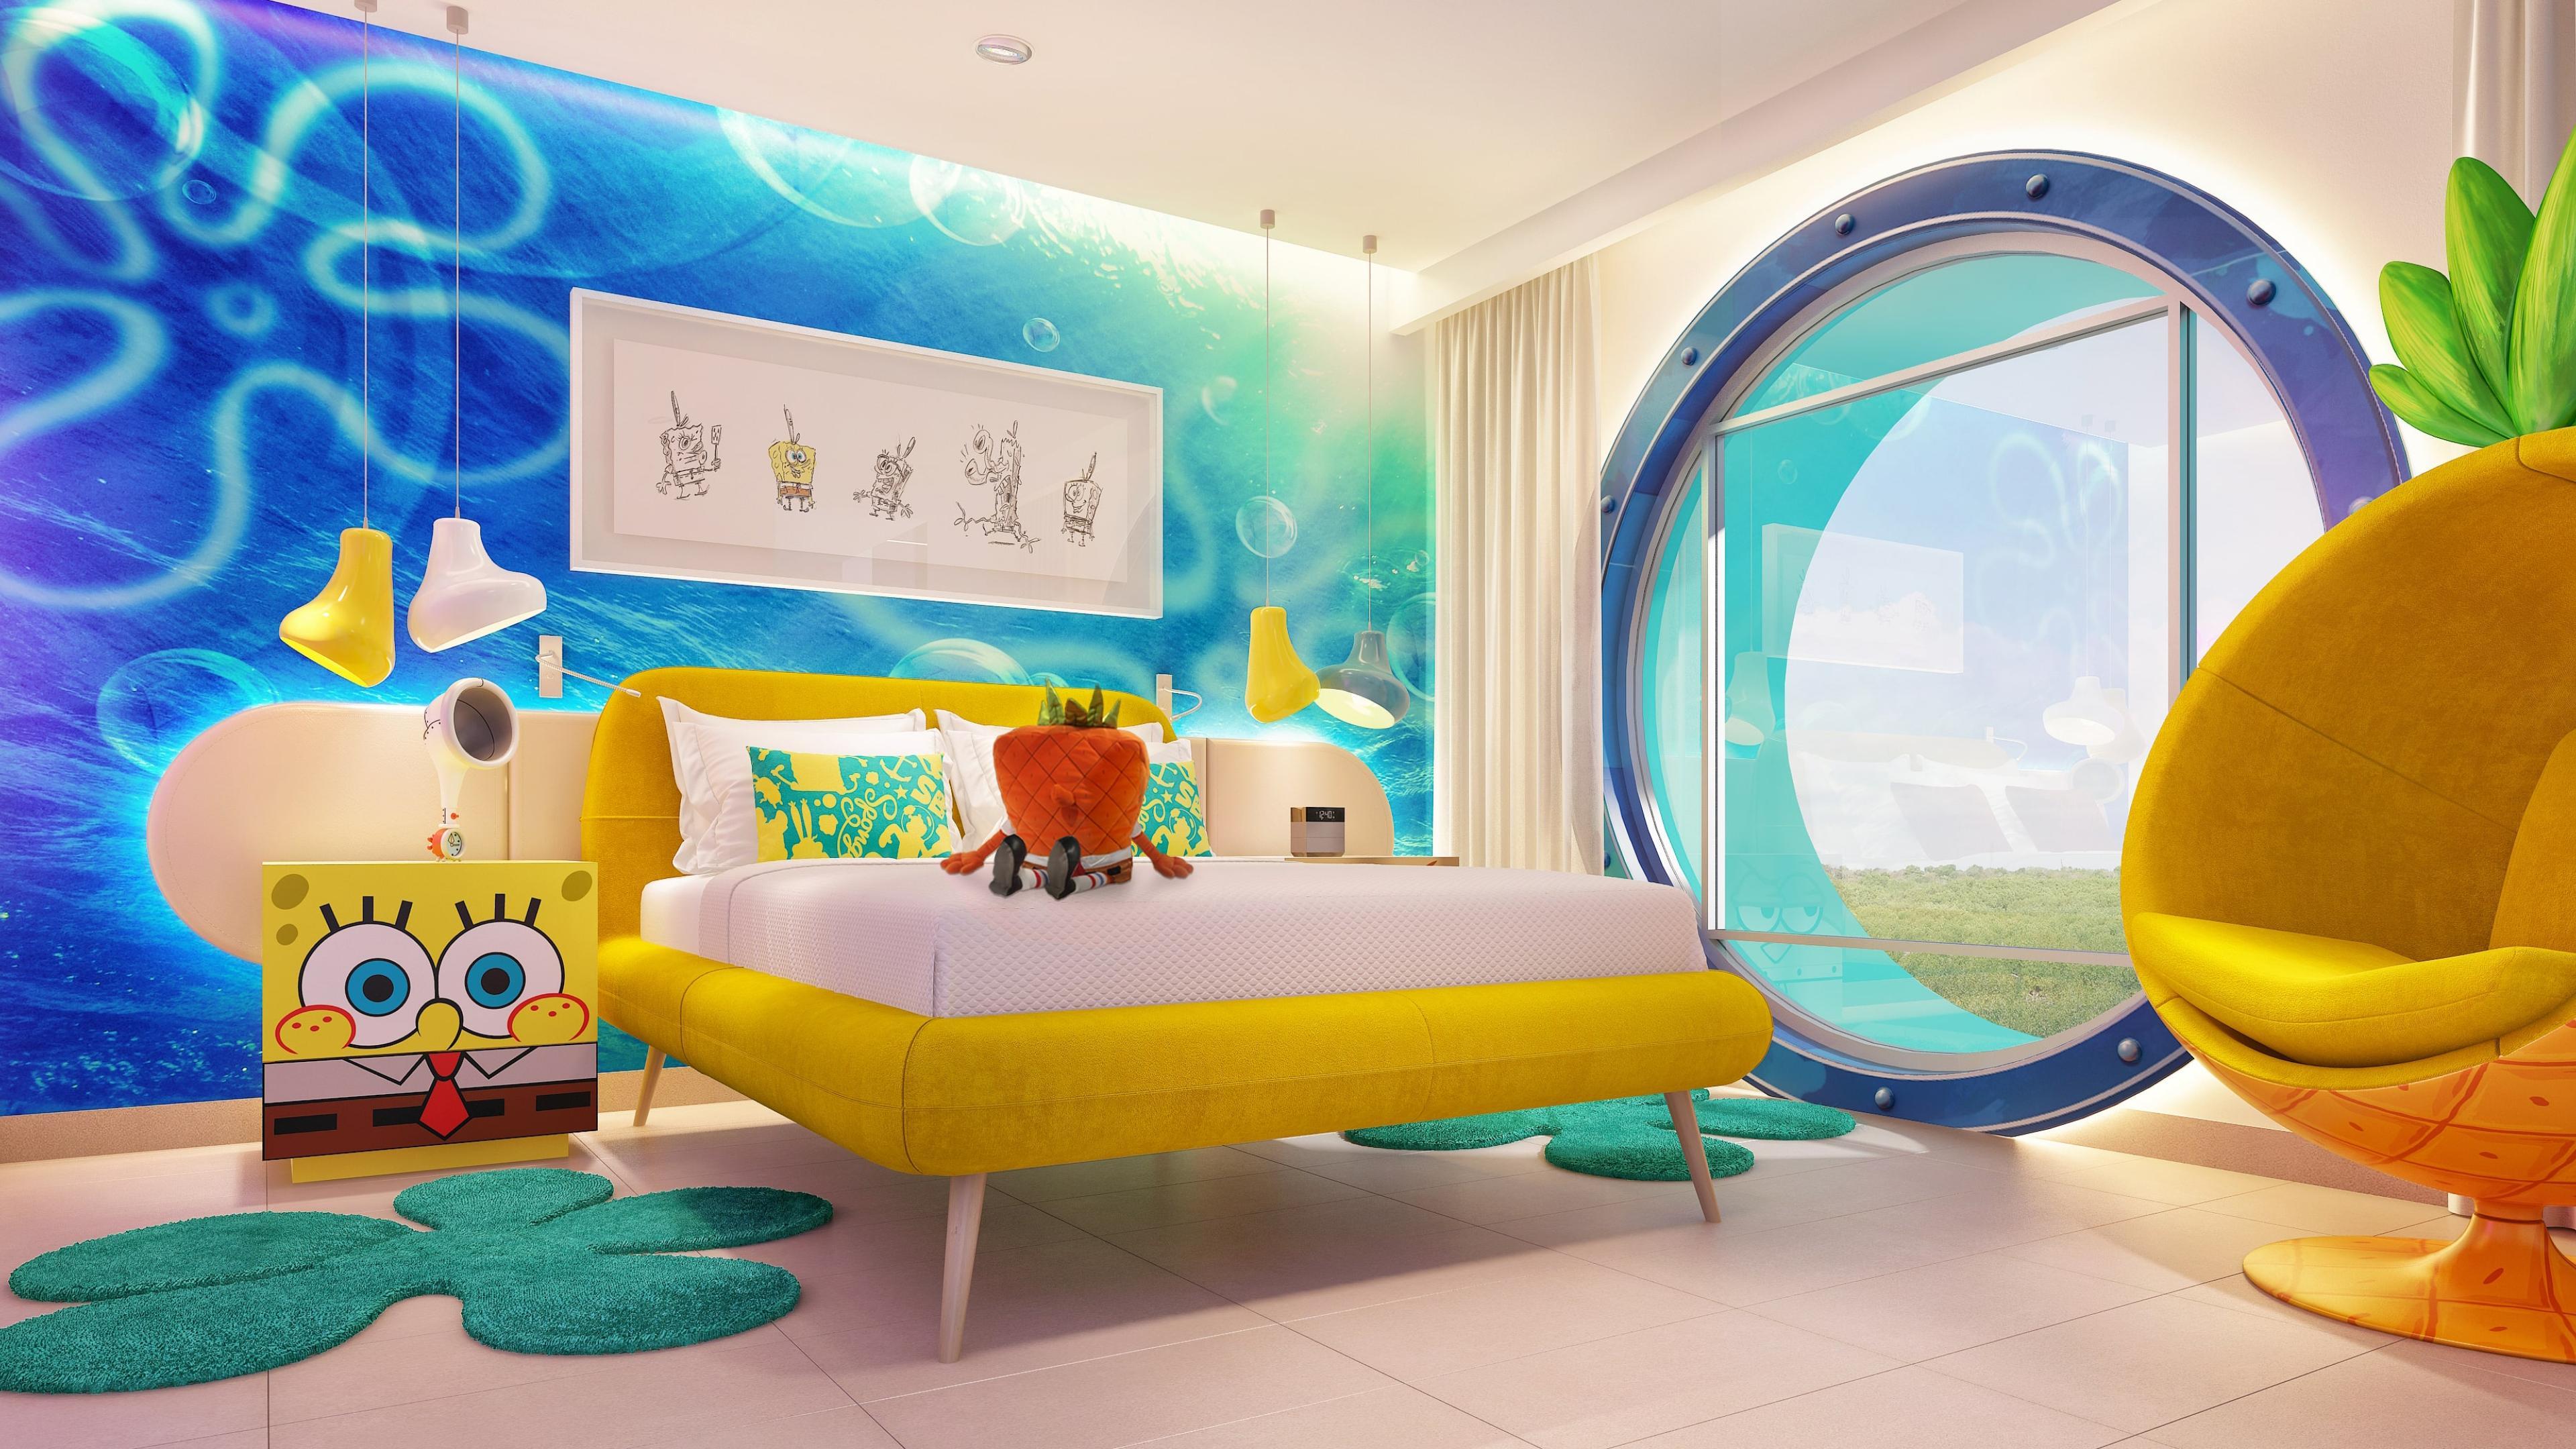 Spongebob bedroom